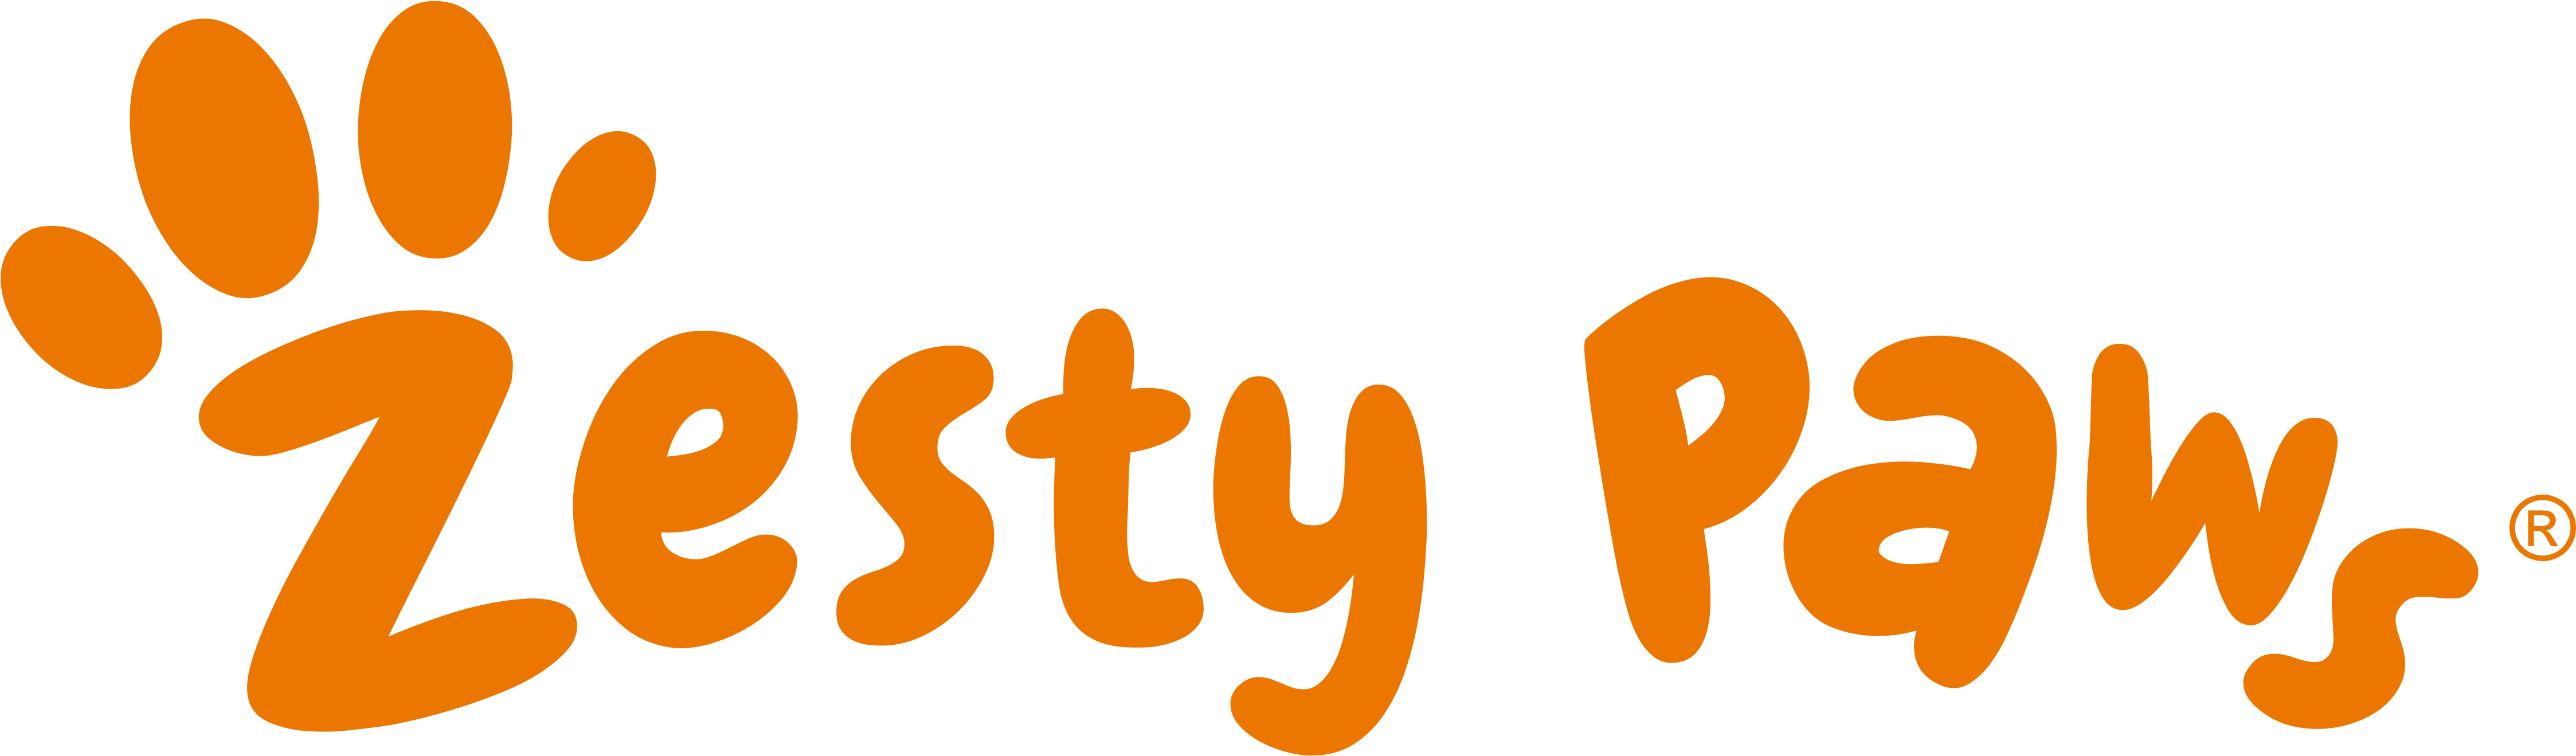 Zestypaws-Logo